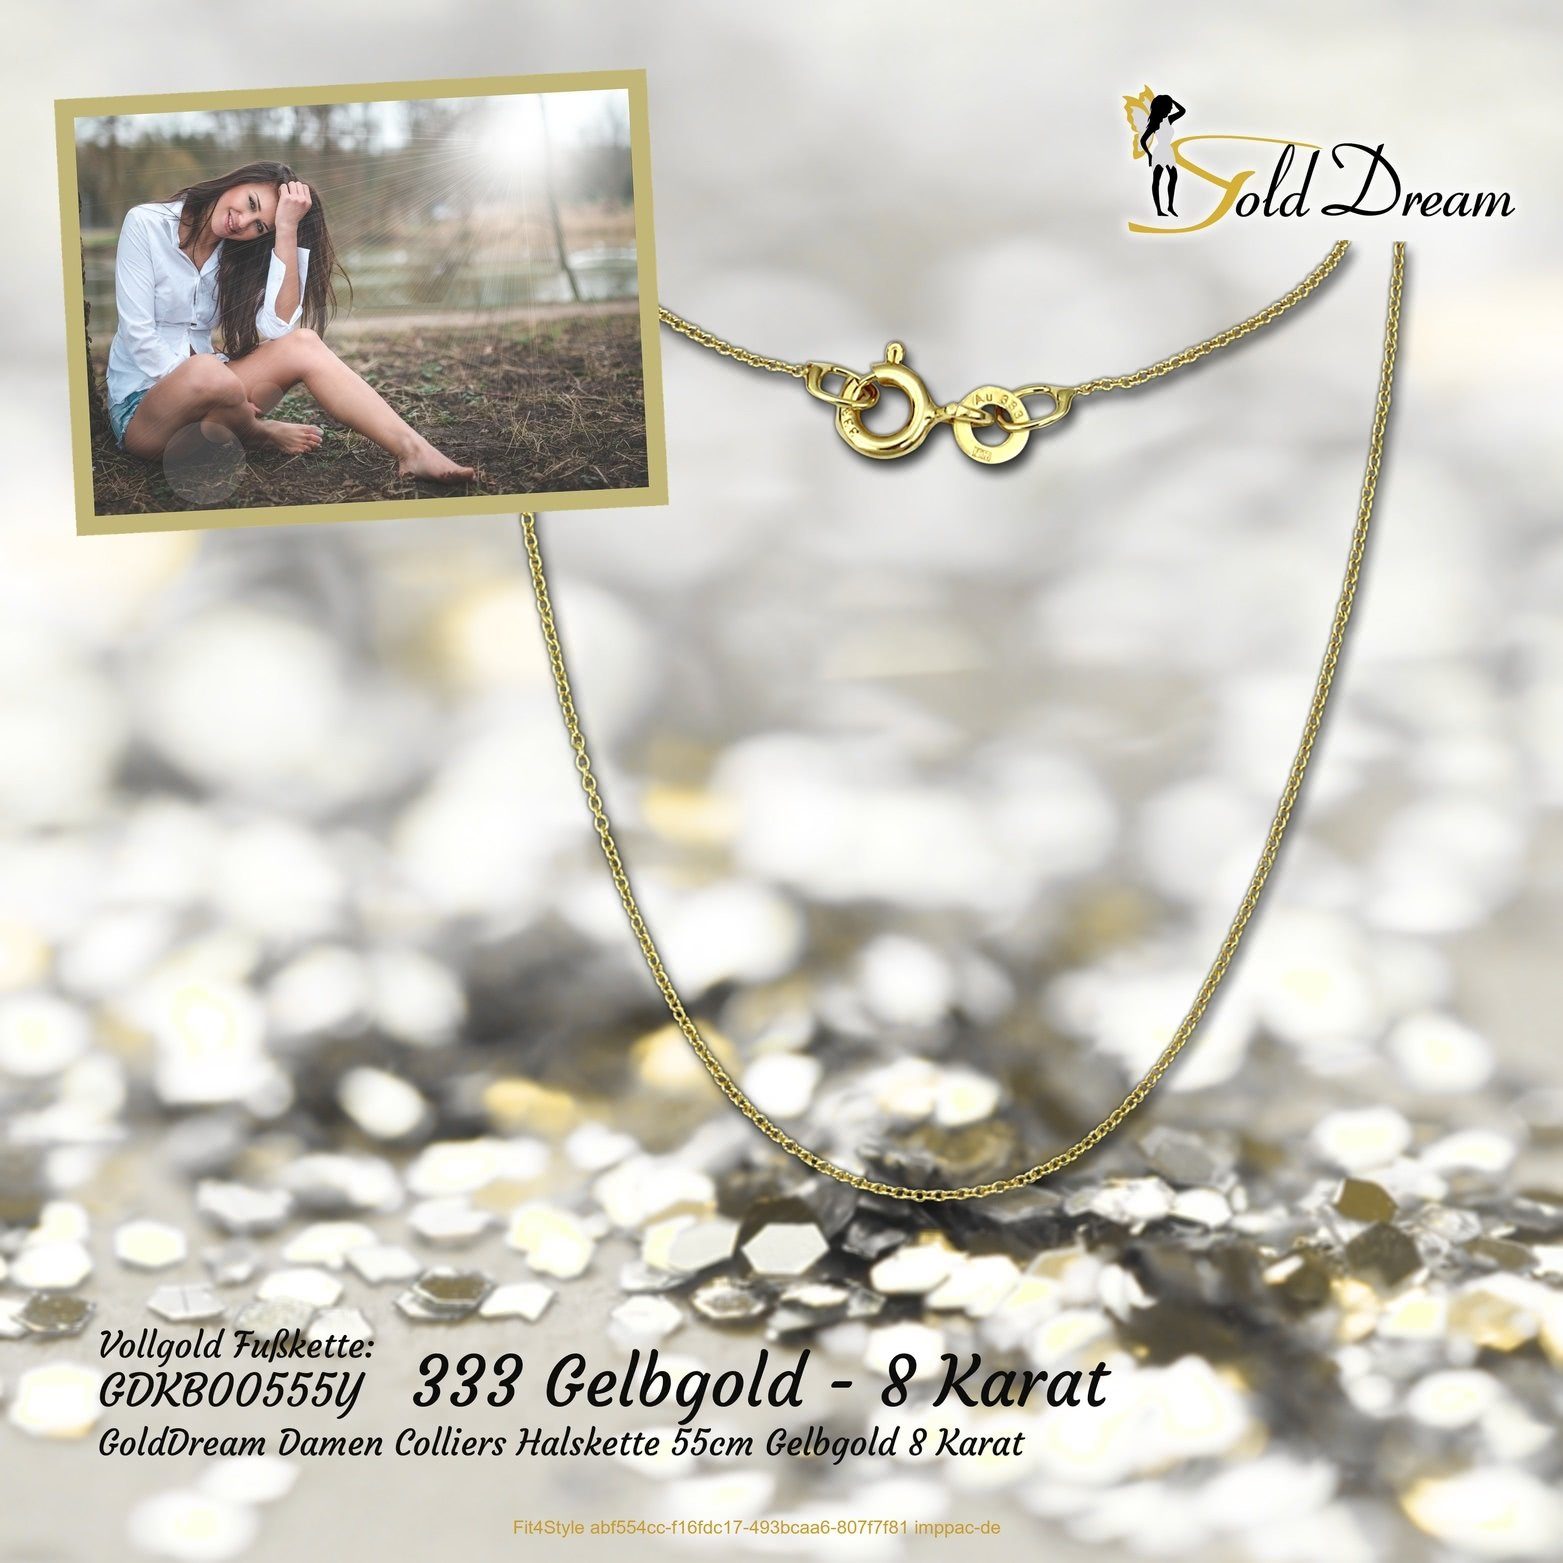 GoldDream Goldkette GoldDream Collier 333 Gelbgold (Collier), 8K Echtgold, Colliers 55cm, Gold 333er Halskette Halskette Damen Karat 8 